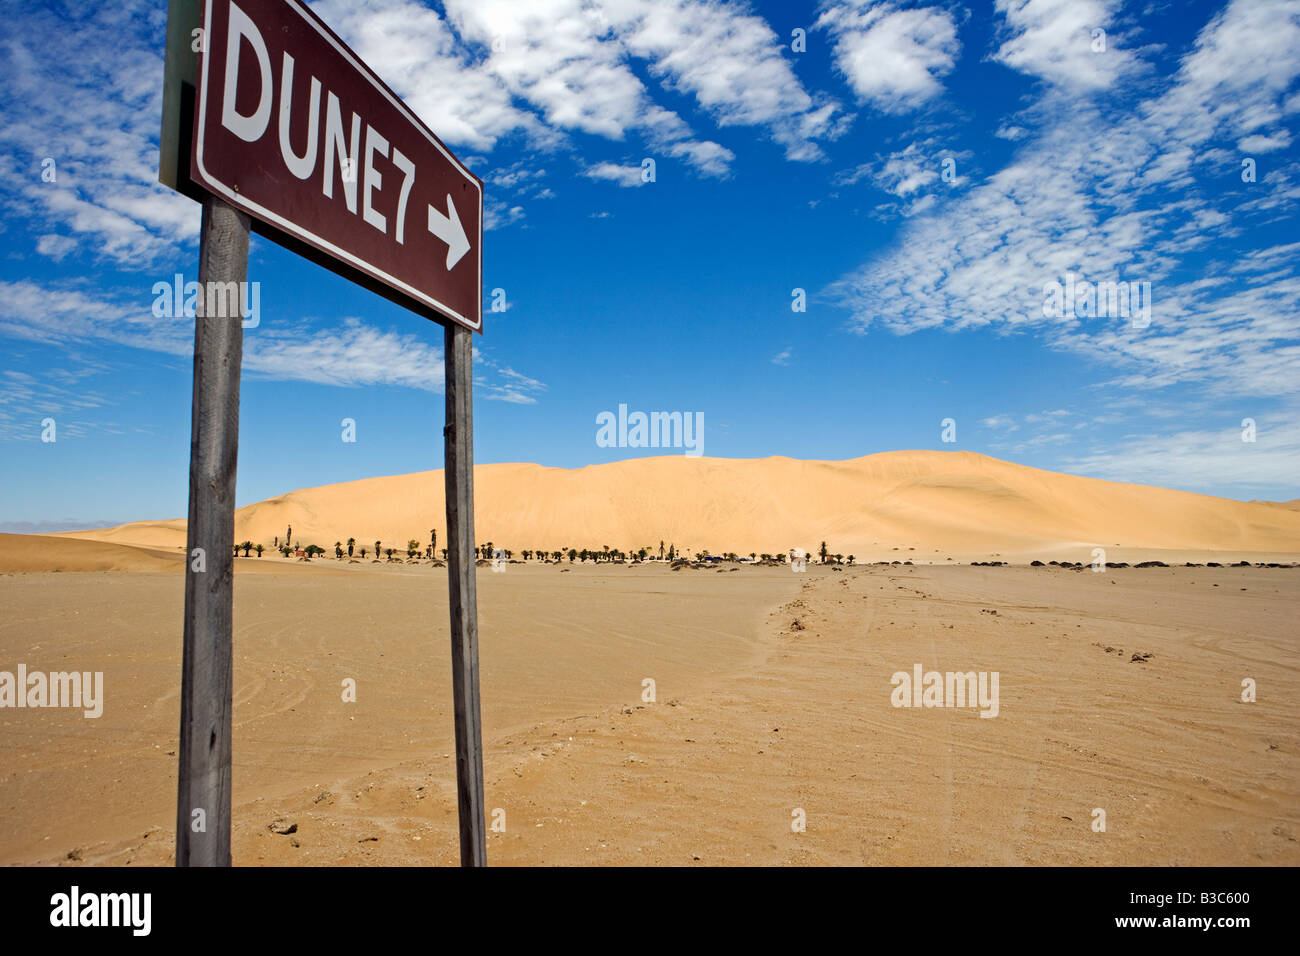 Namibia, Skeleton Coast, Walvis Bay. Das Zeichen, um die beliebten touristischen Düne Dune 7 befindet sich in der Nähe von Swakopmund und Walvis Bay. Dune 7 ist eine große Sanddüne in der Wüste Namib, eines der größten in der Welt und die höchste im Küstenriemen beliebt bei Sandboarders. Stockfoto